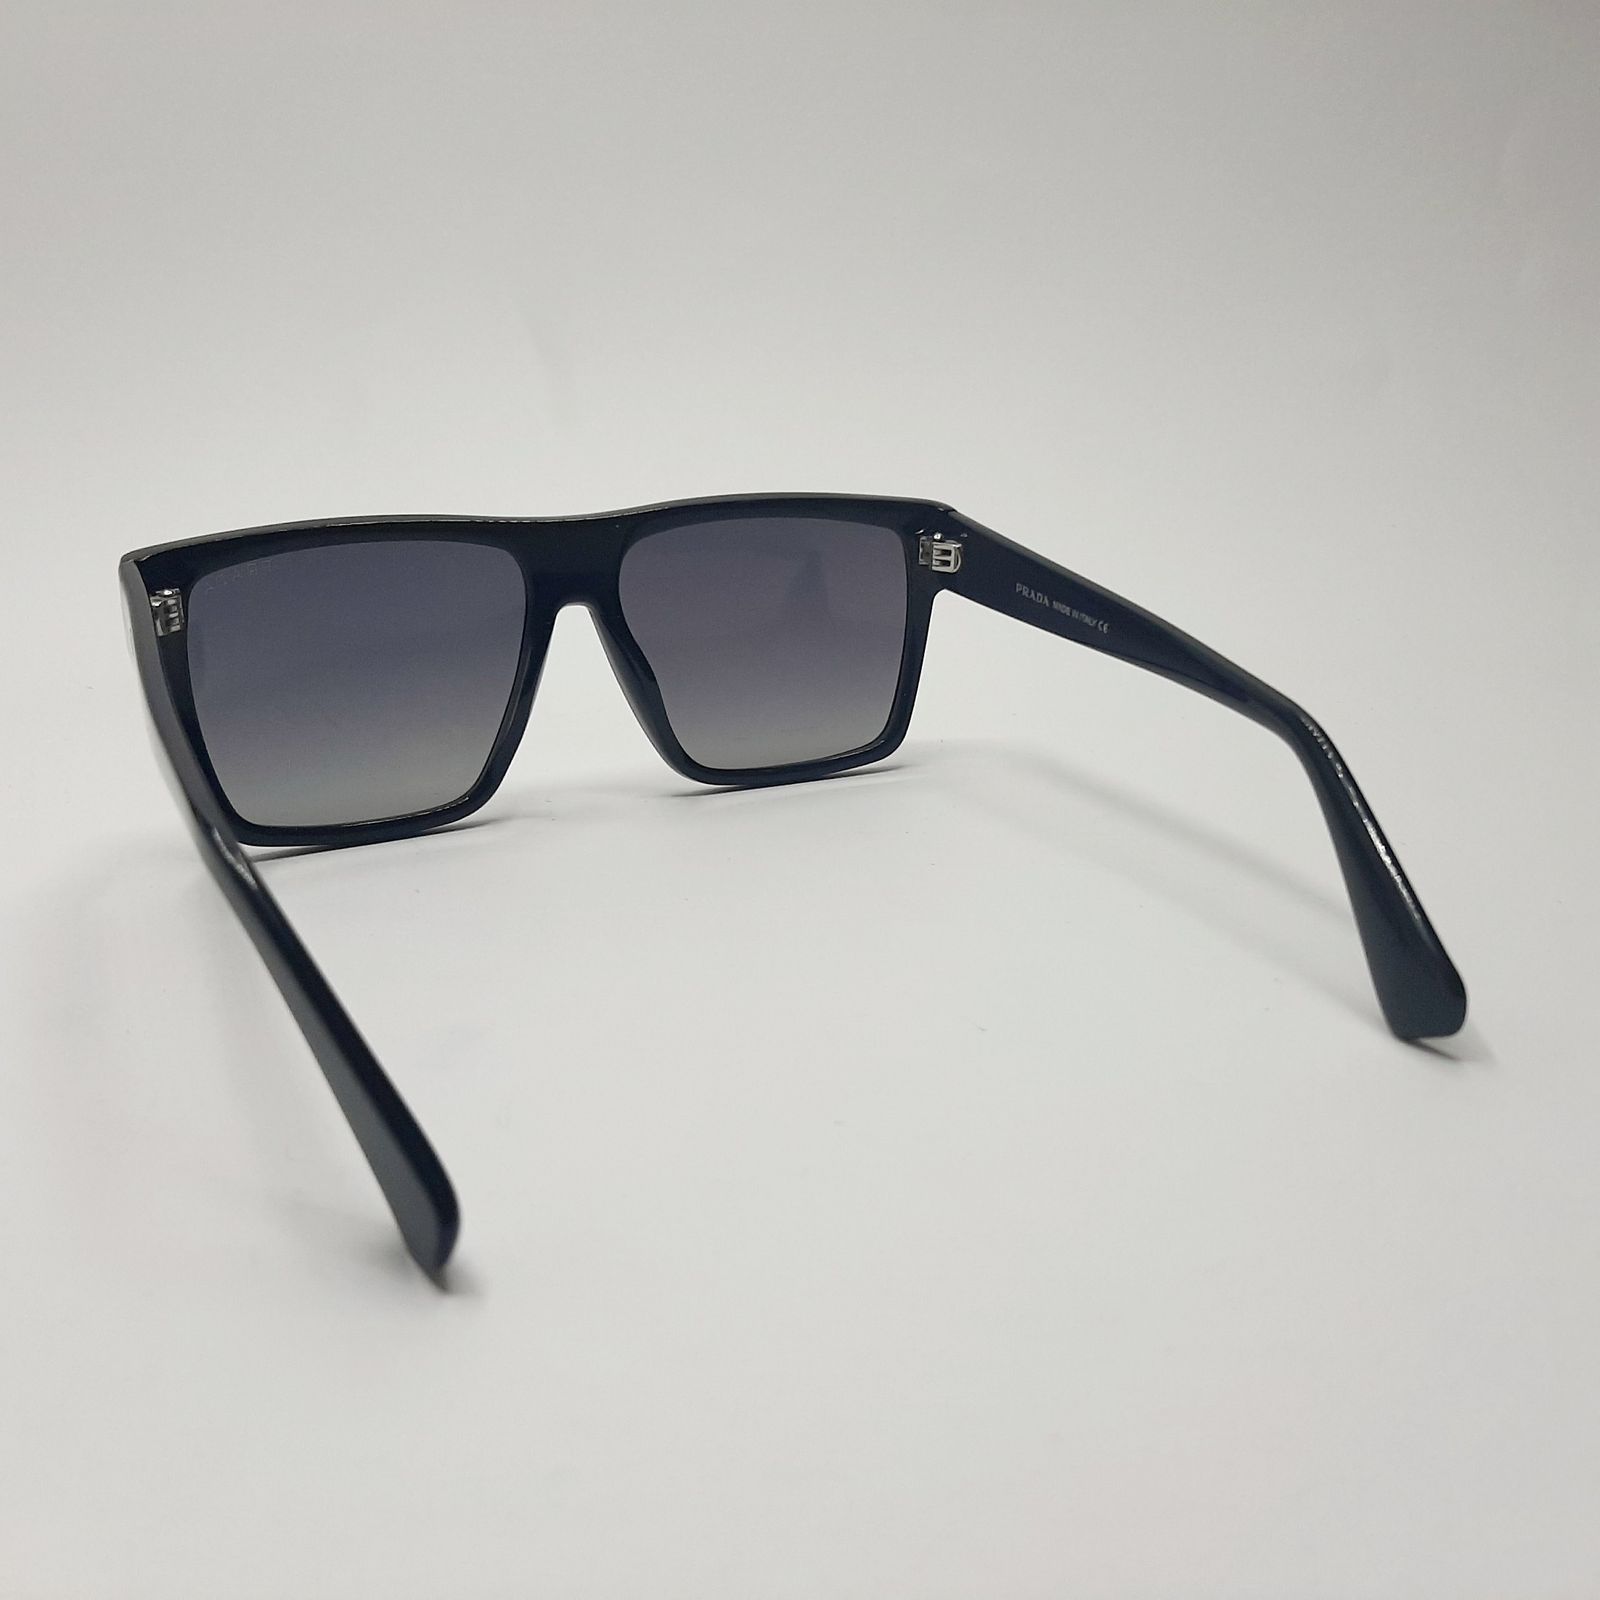 عینک آفتابی پرادا مدل VS8007c2 -  - 5